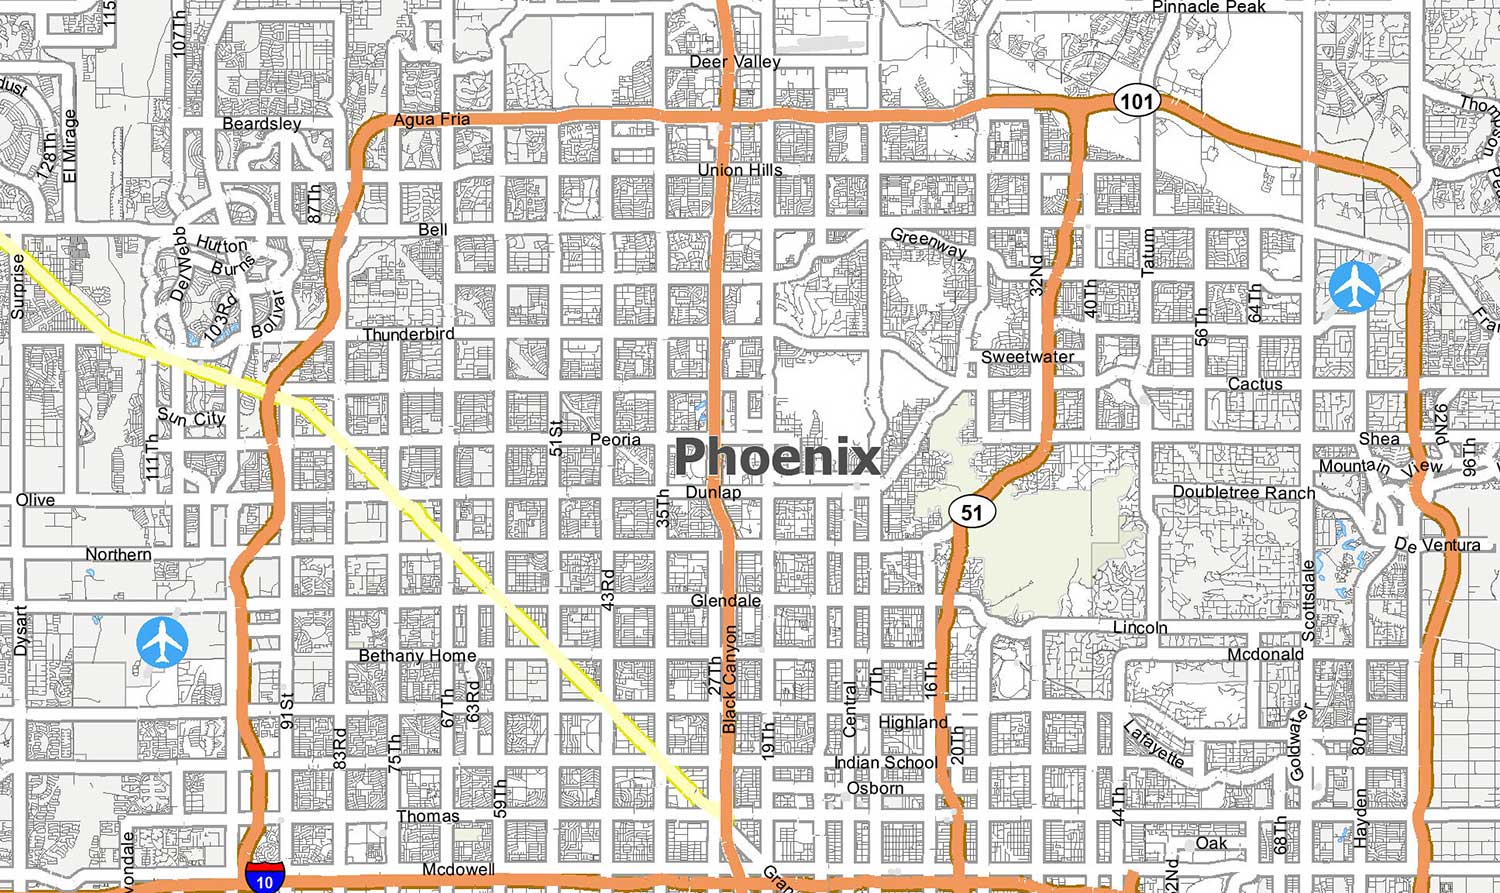 directions to phoenix arizona